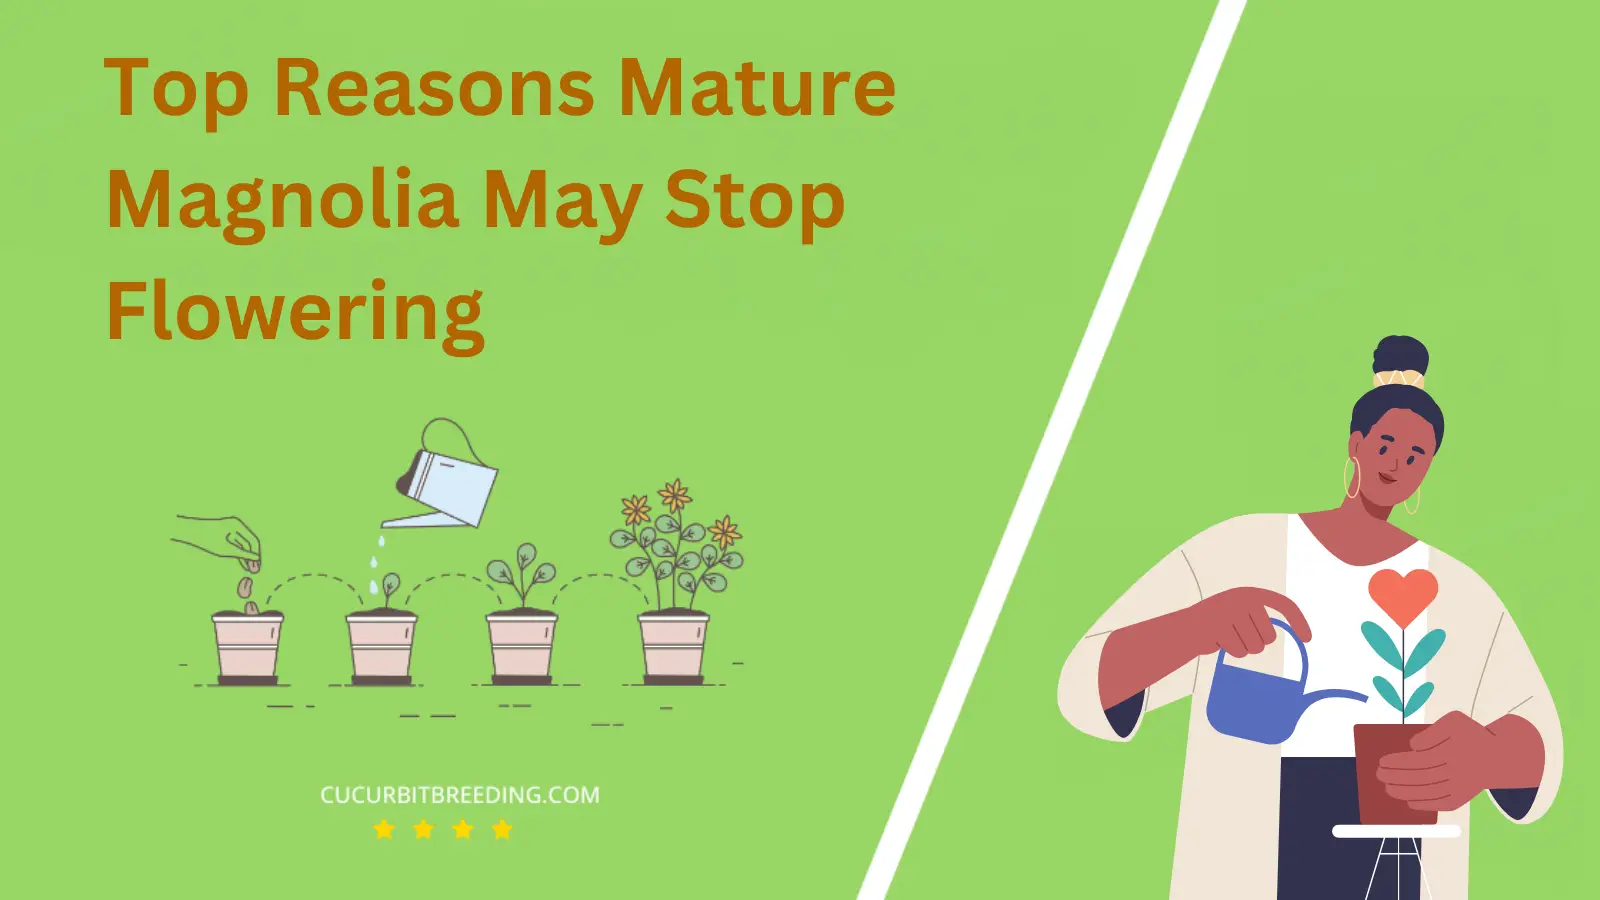 Top Reasons Mature Magnolia May Stop Flowering